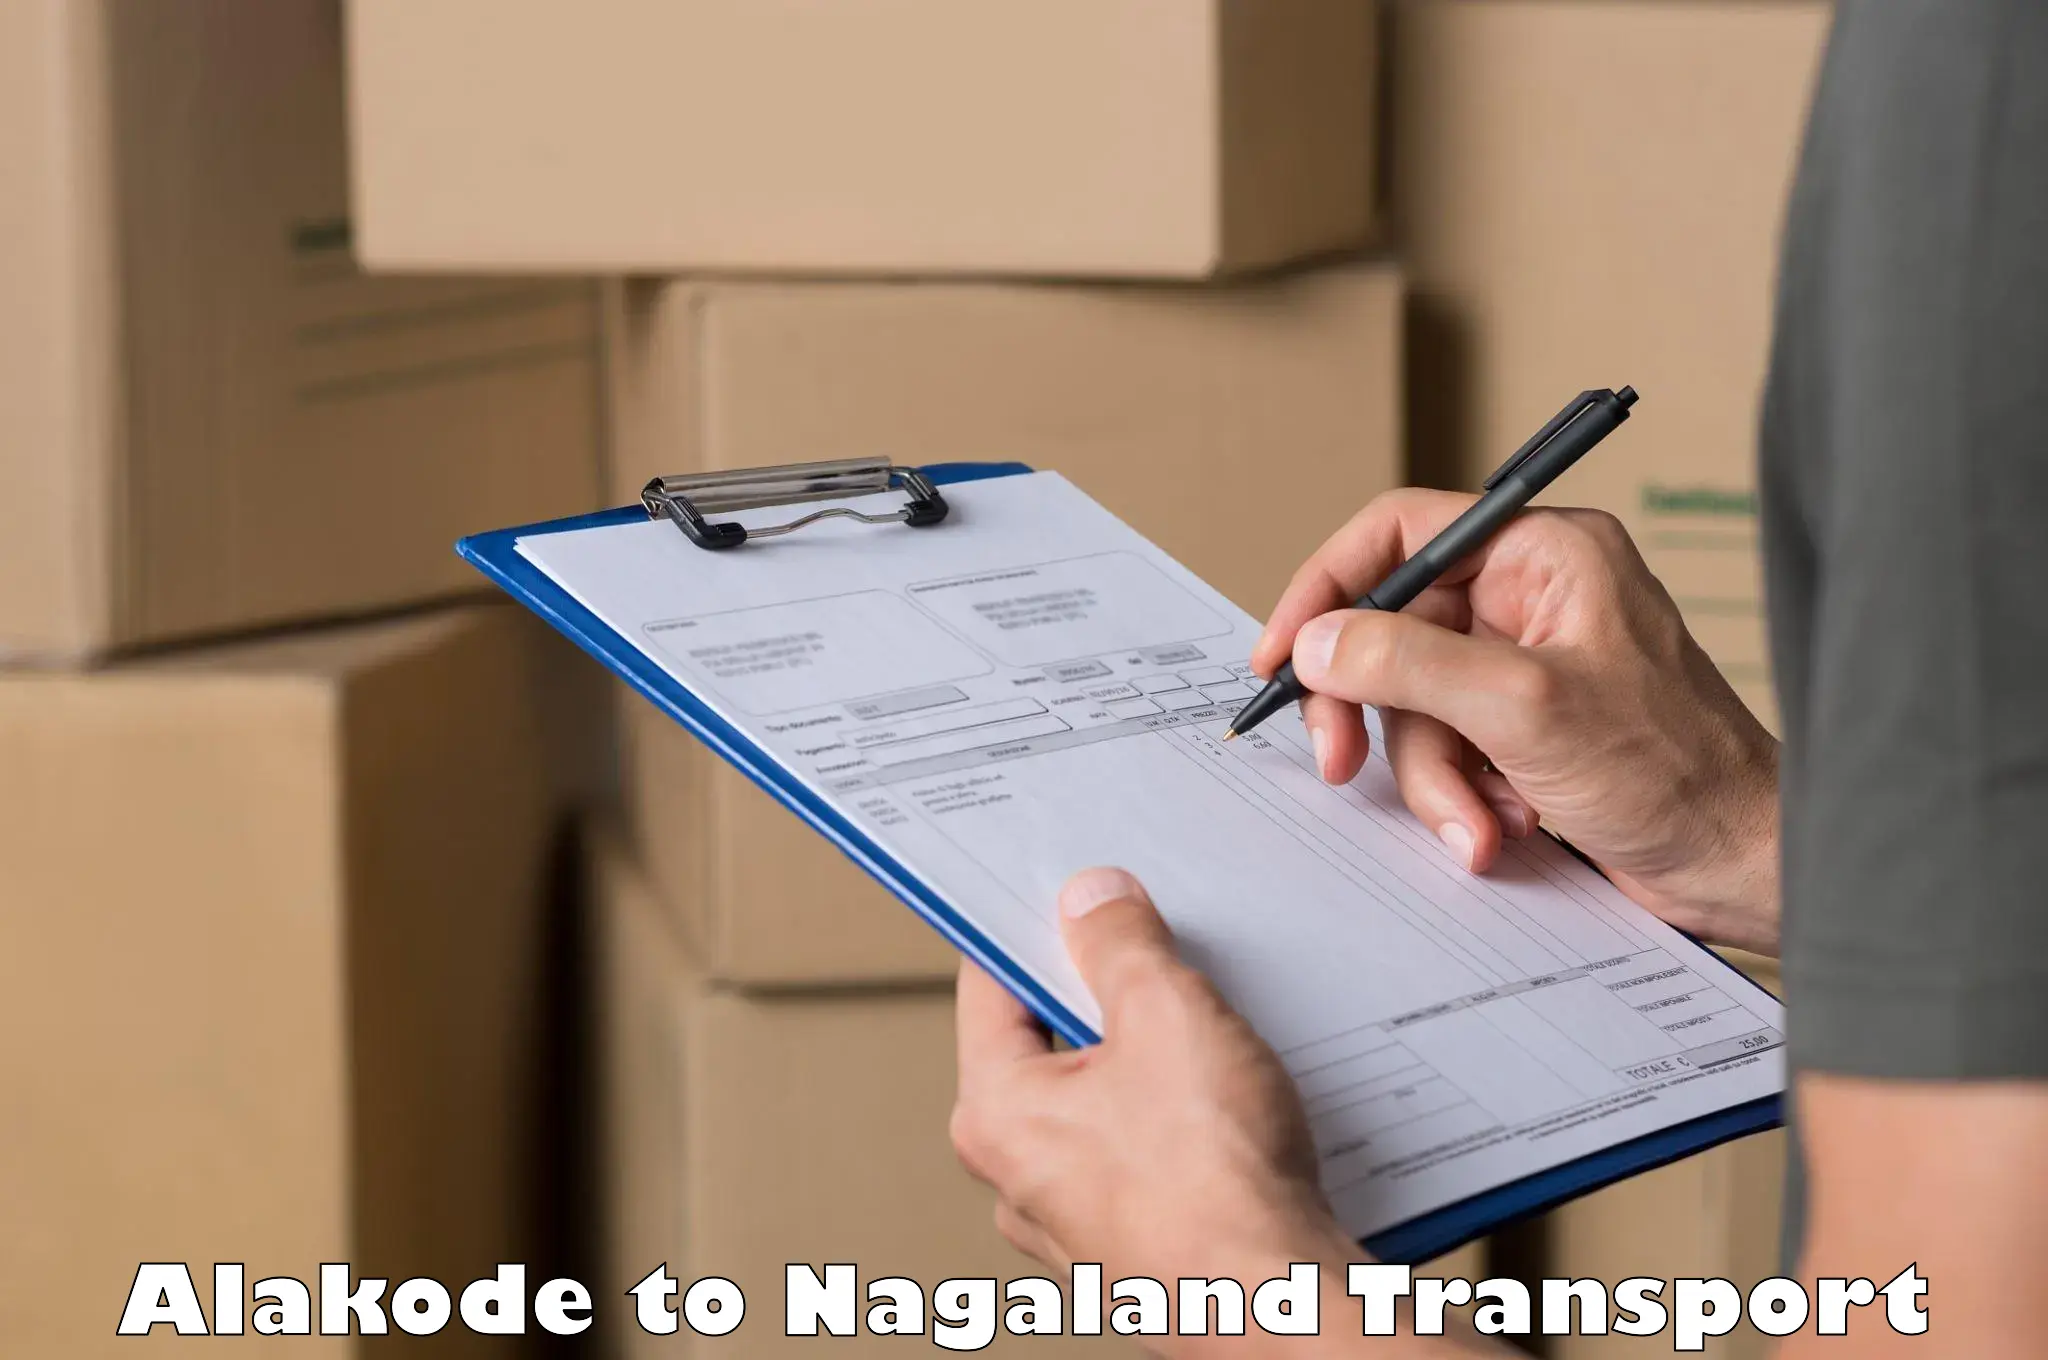 Online transport service Alakode to NIT Nagaland